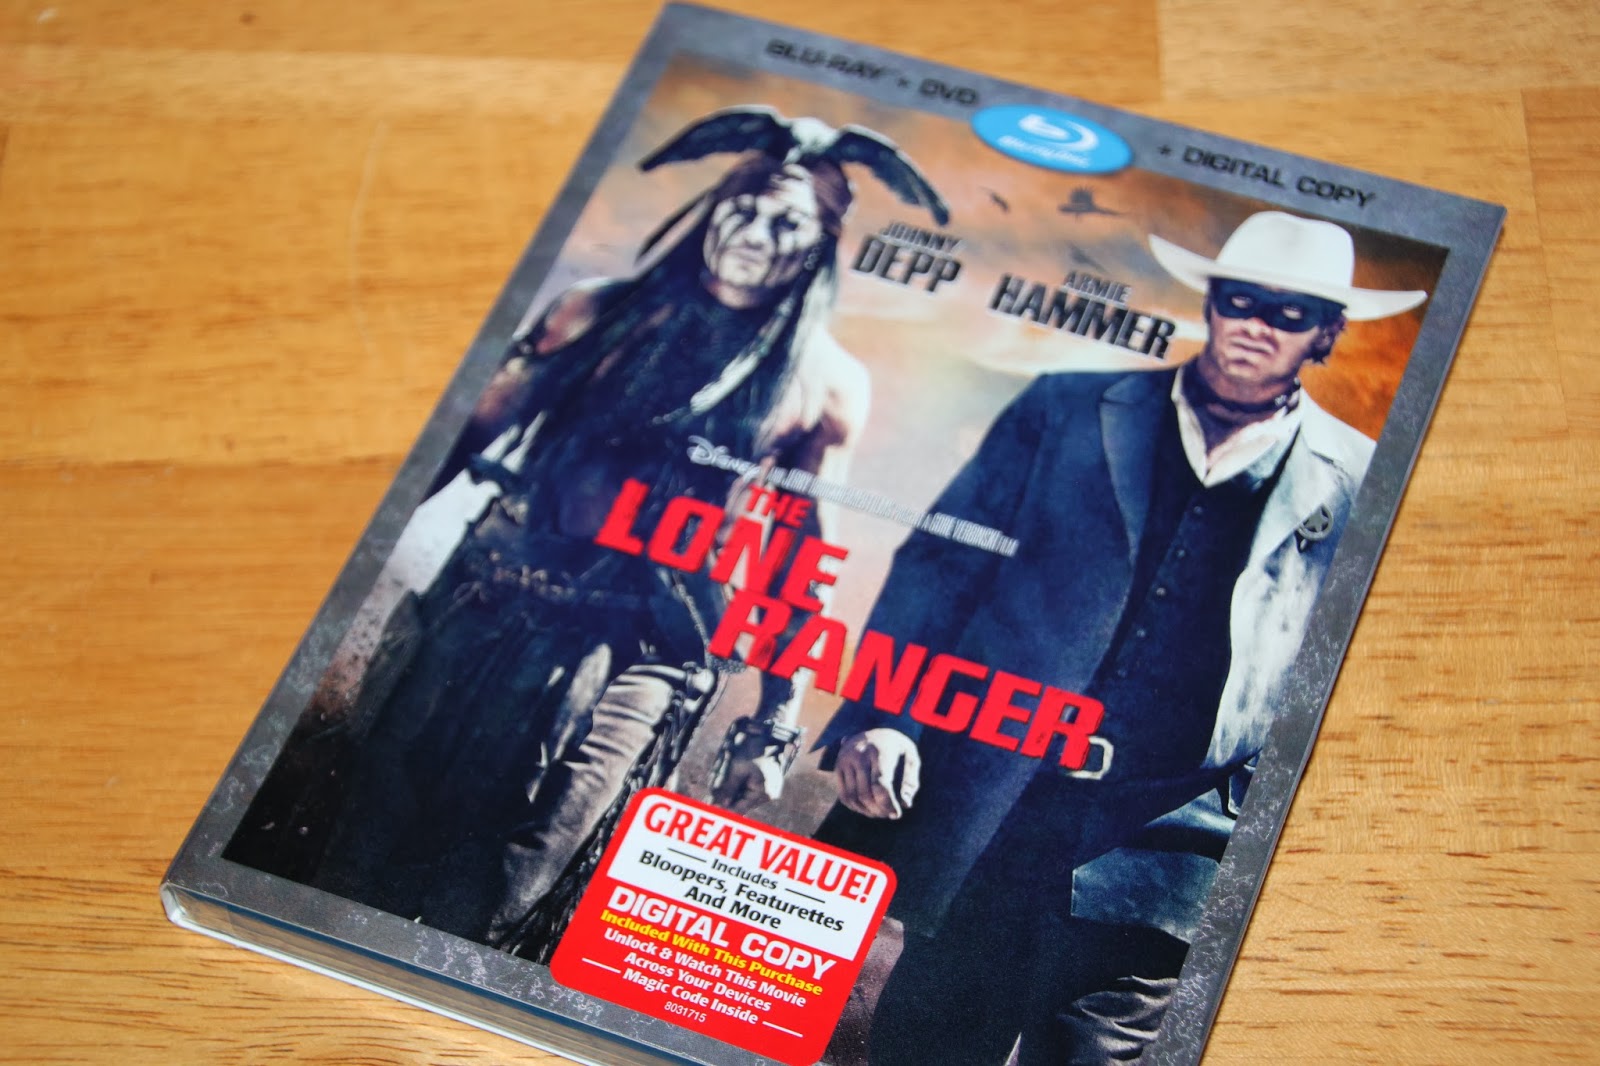 dvd ranger purchase